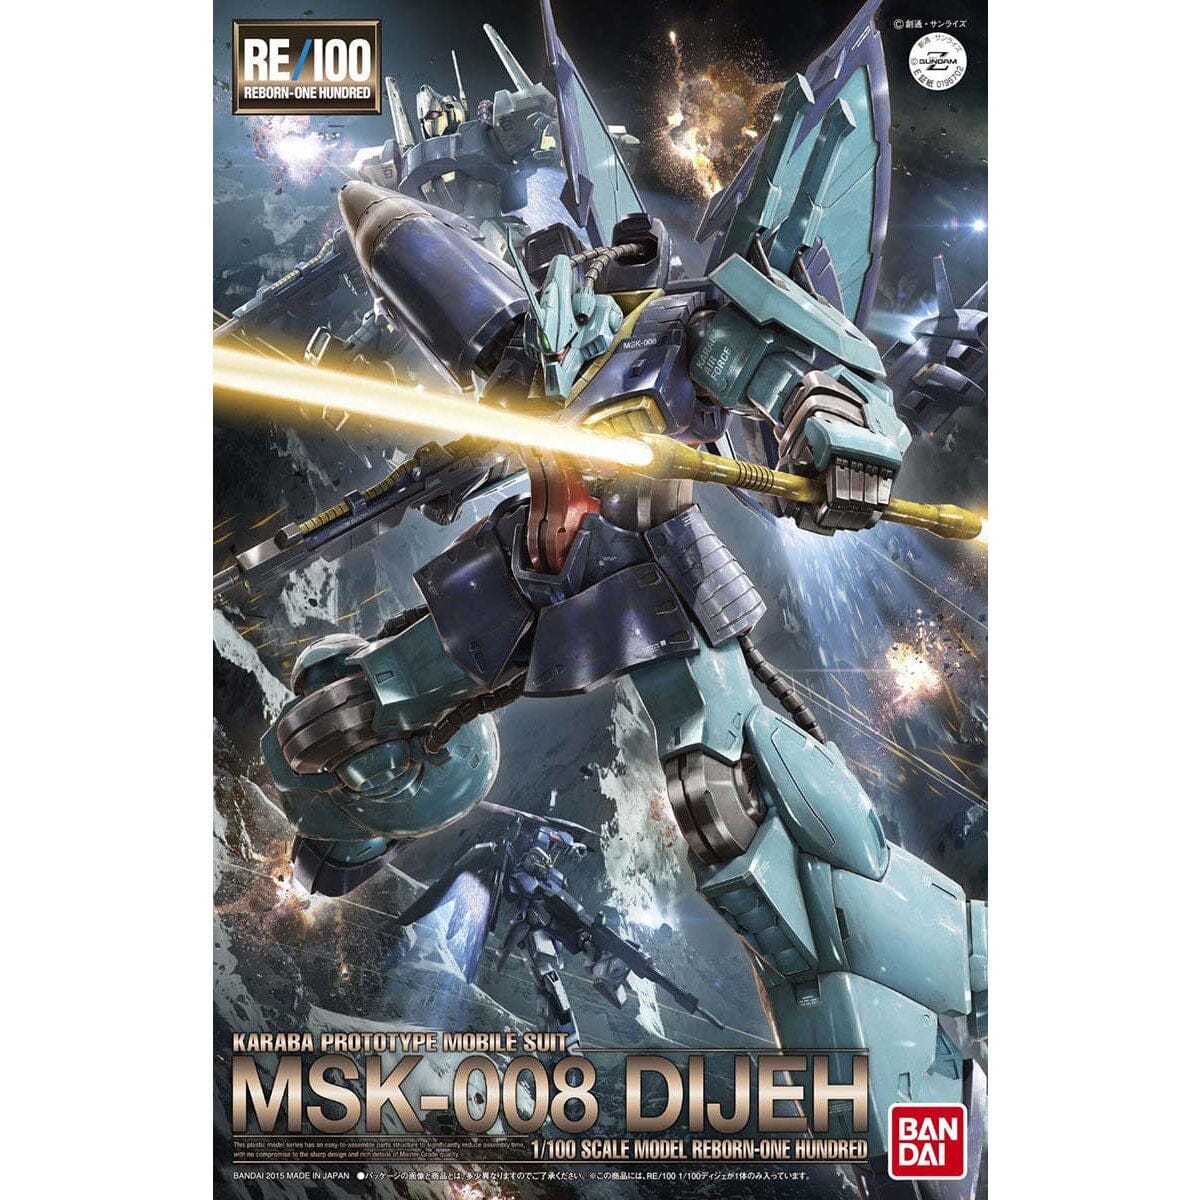 RE/100 #04 1/100 Dijeh – USA Gundam Store